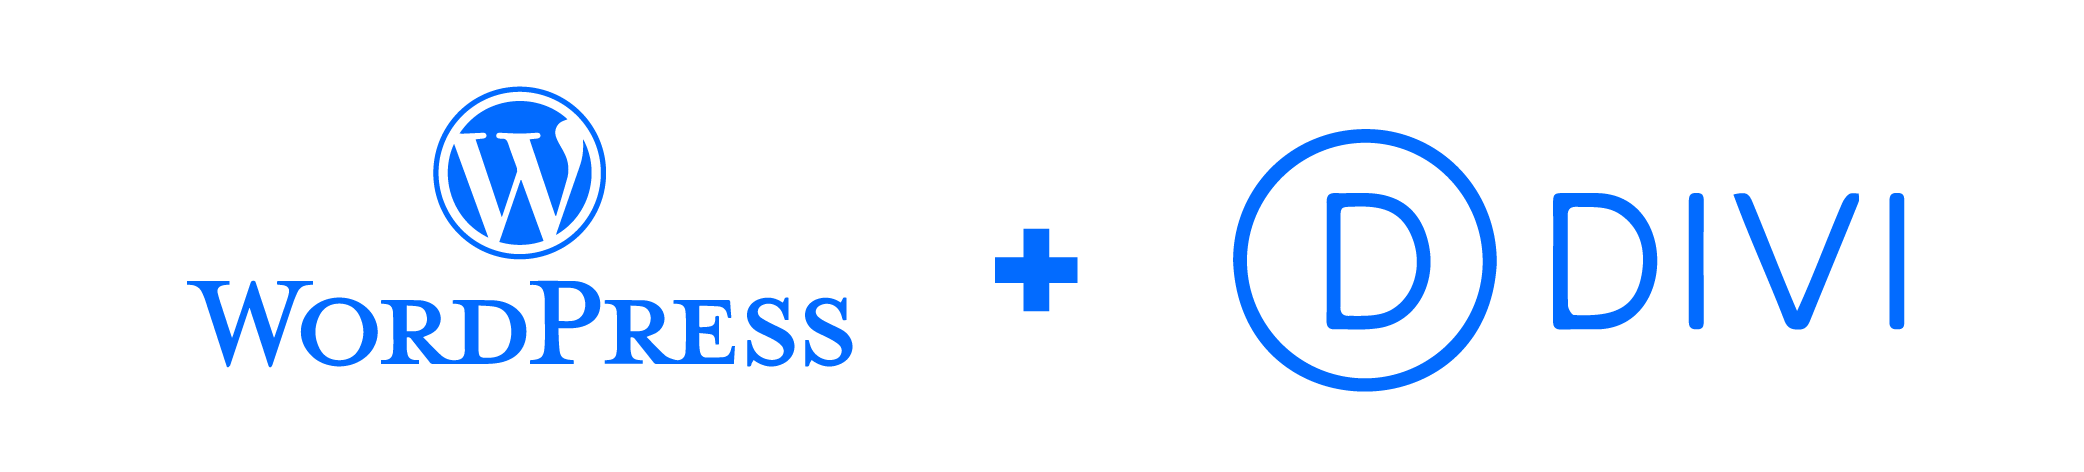 Logos von WordPress und Divi Seite an Seite, symbolisieren leistungsstarke Webentwicklung und Design-Tools.